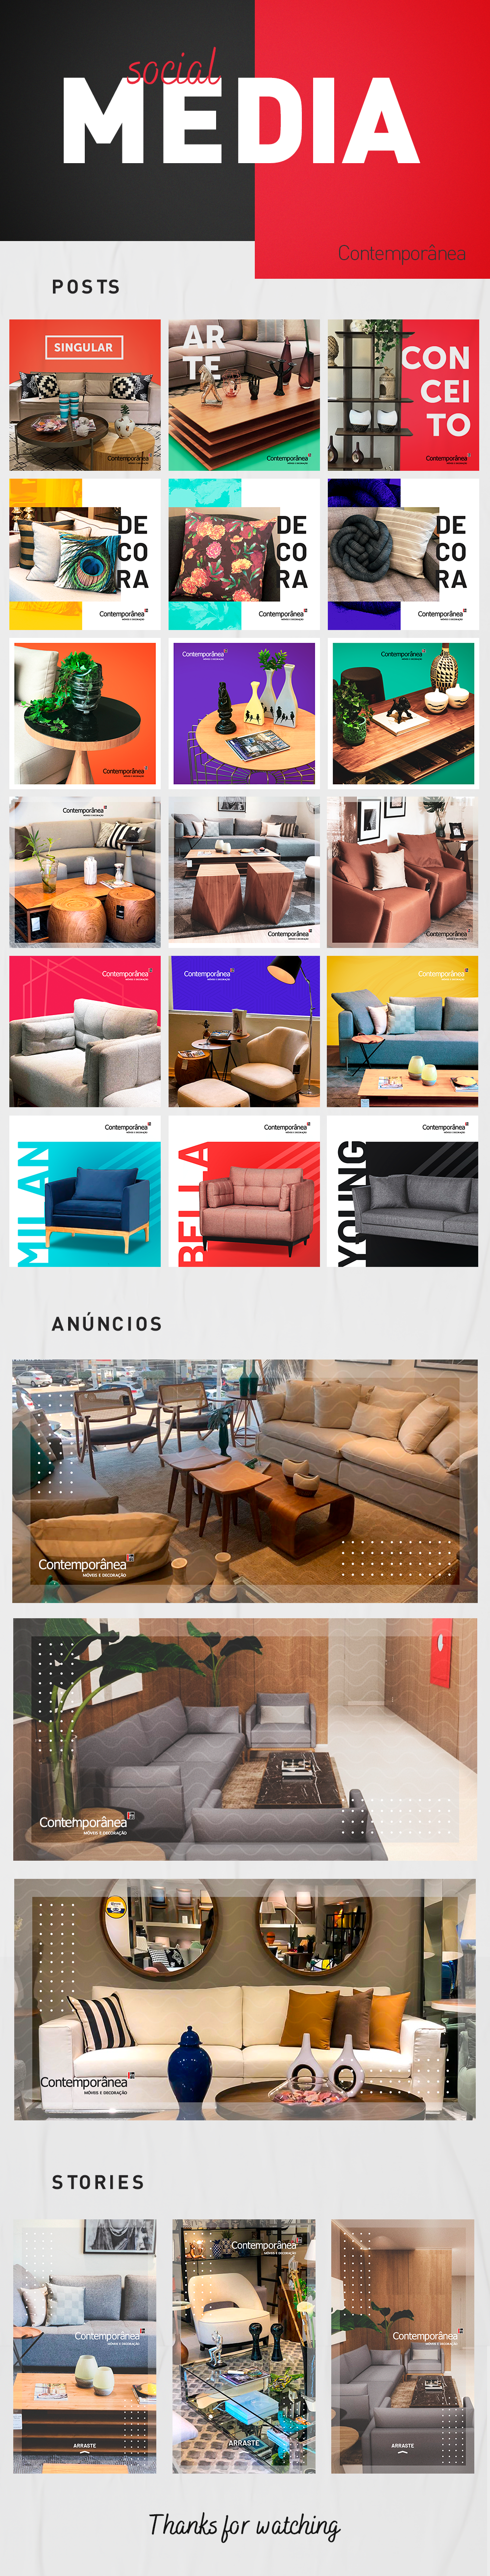 Socialmedia redesociais furniture ArtDirection graphicdesign